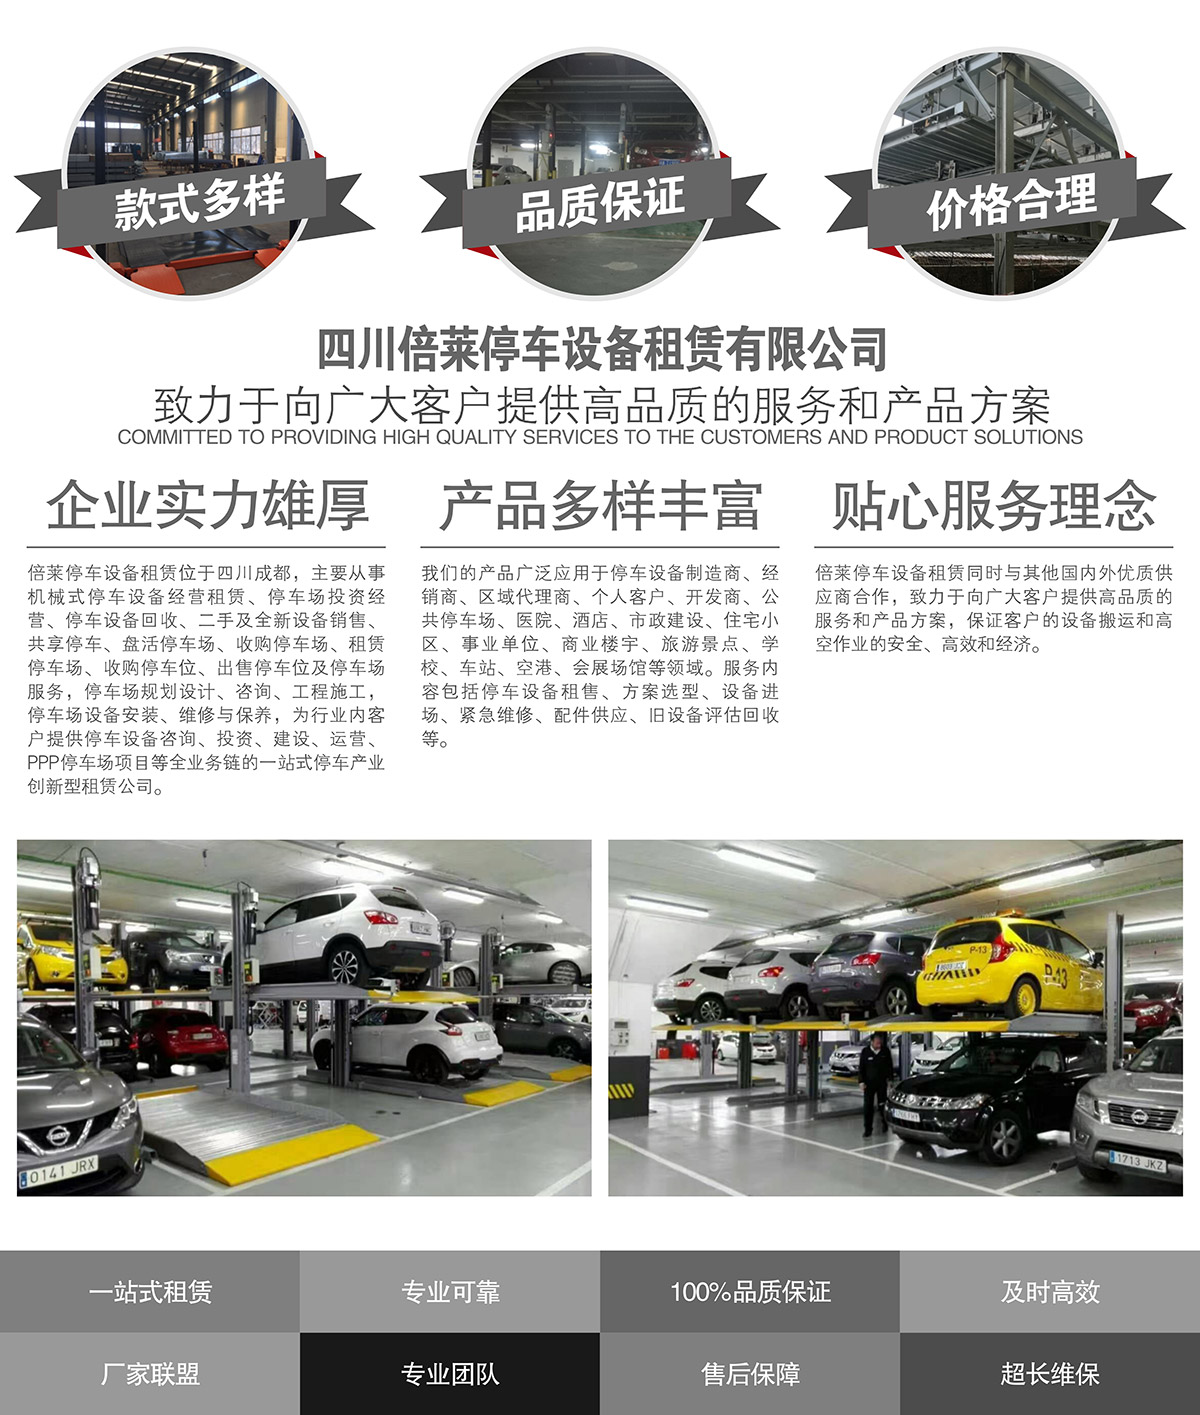 重庆倍莱立体车库租赁提供高品质的服务和产品方案.jpg